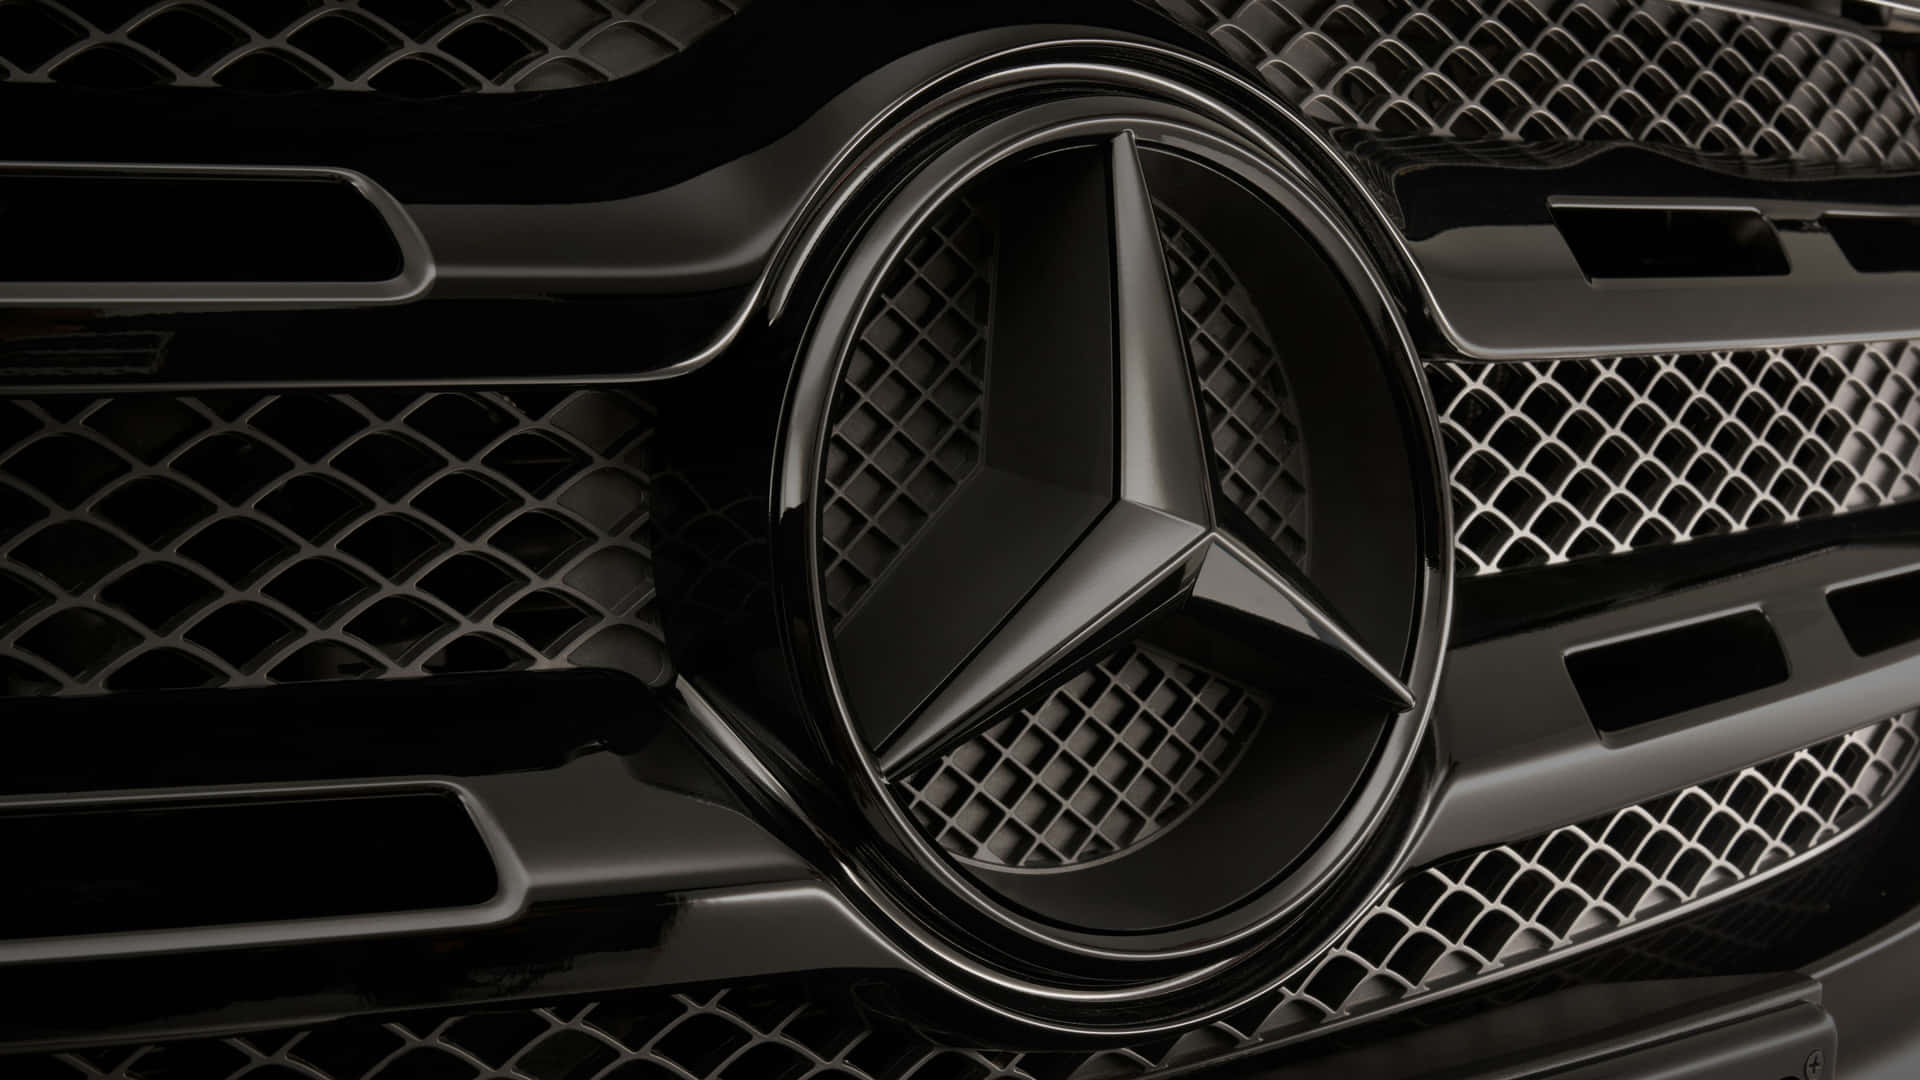 Black Mercedes Car Front 4k Wallpaper